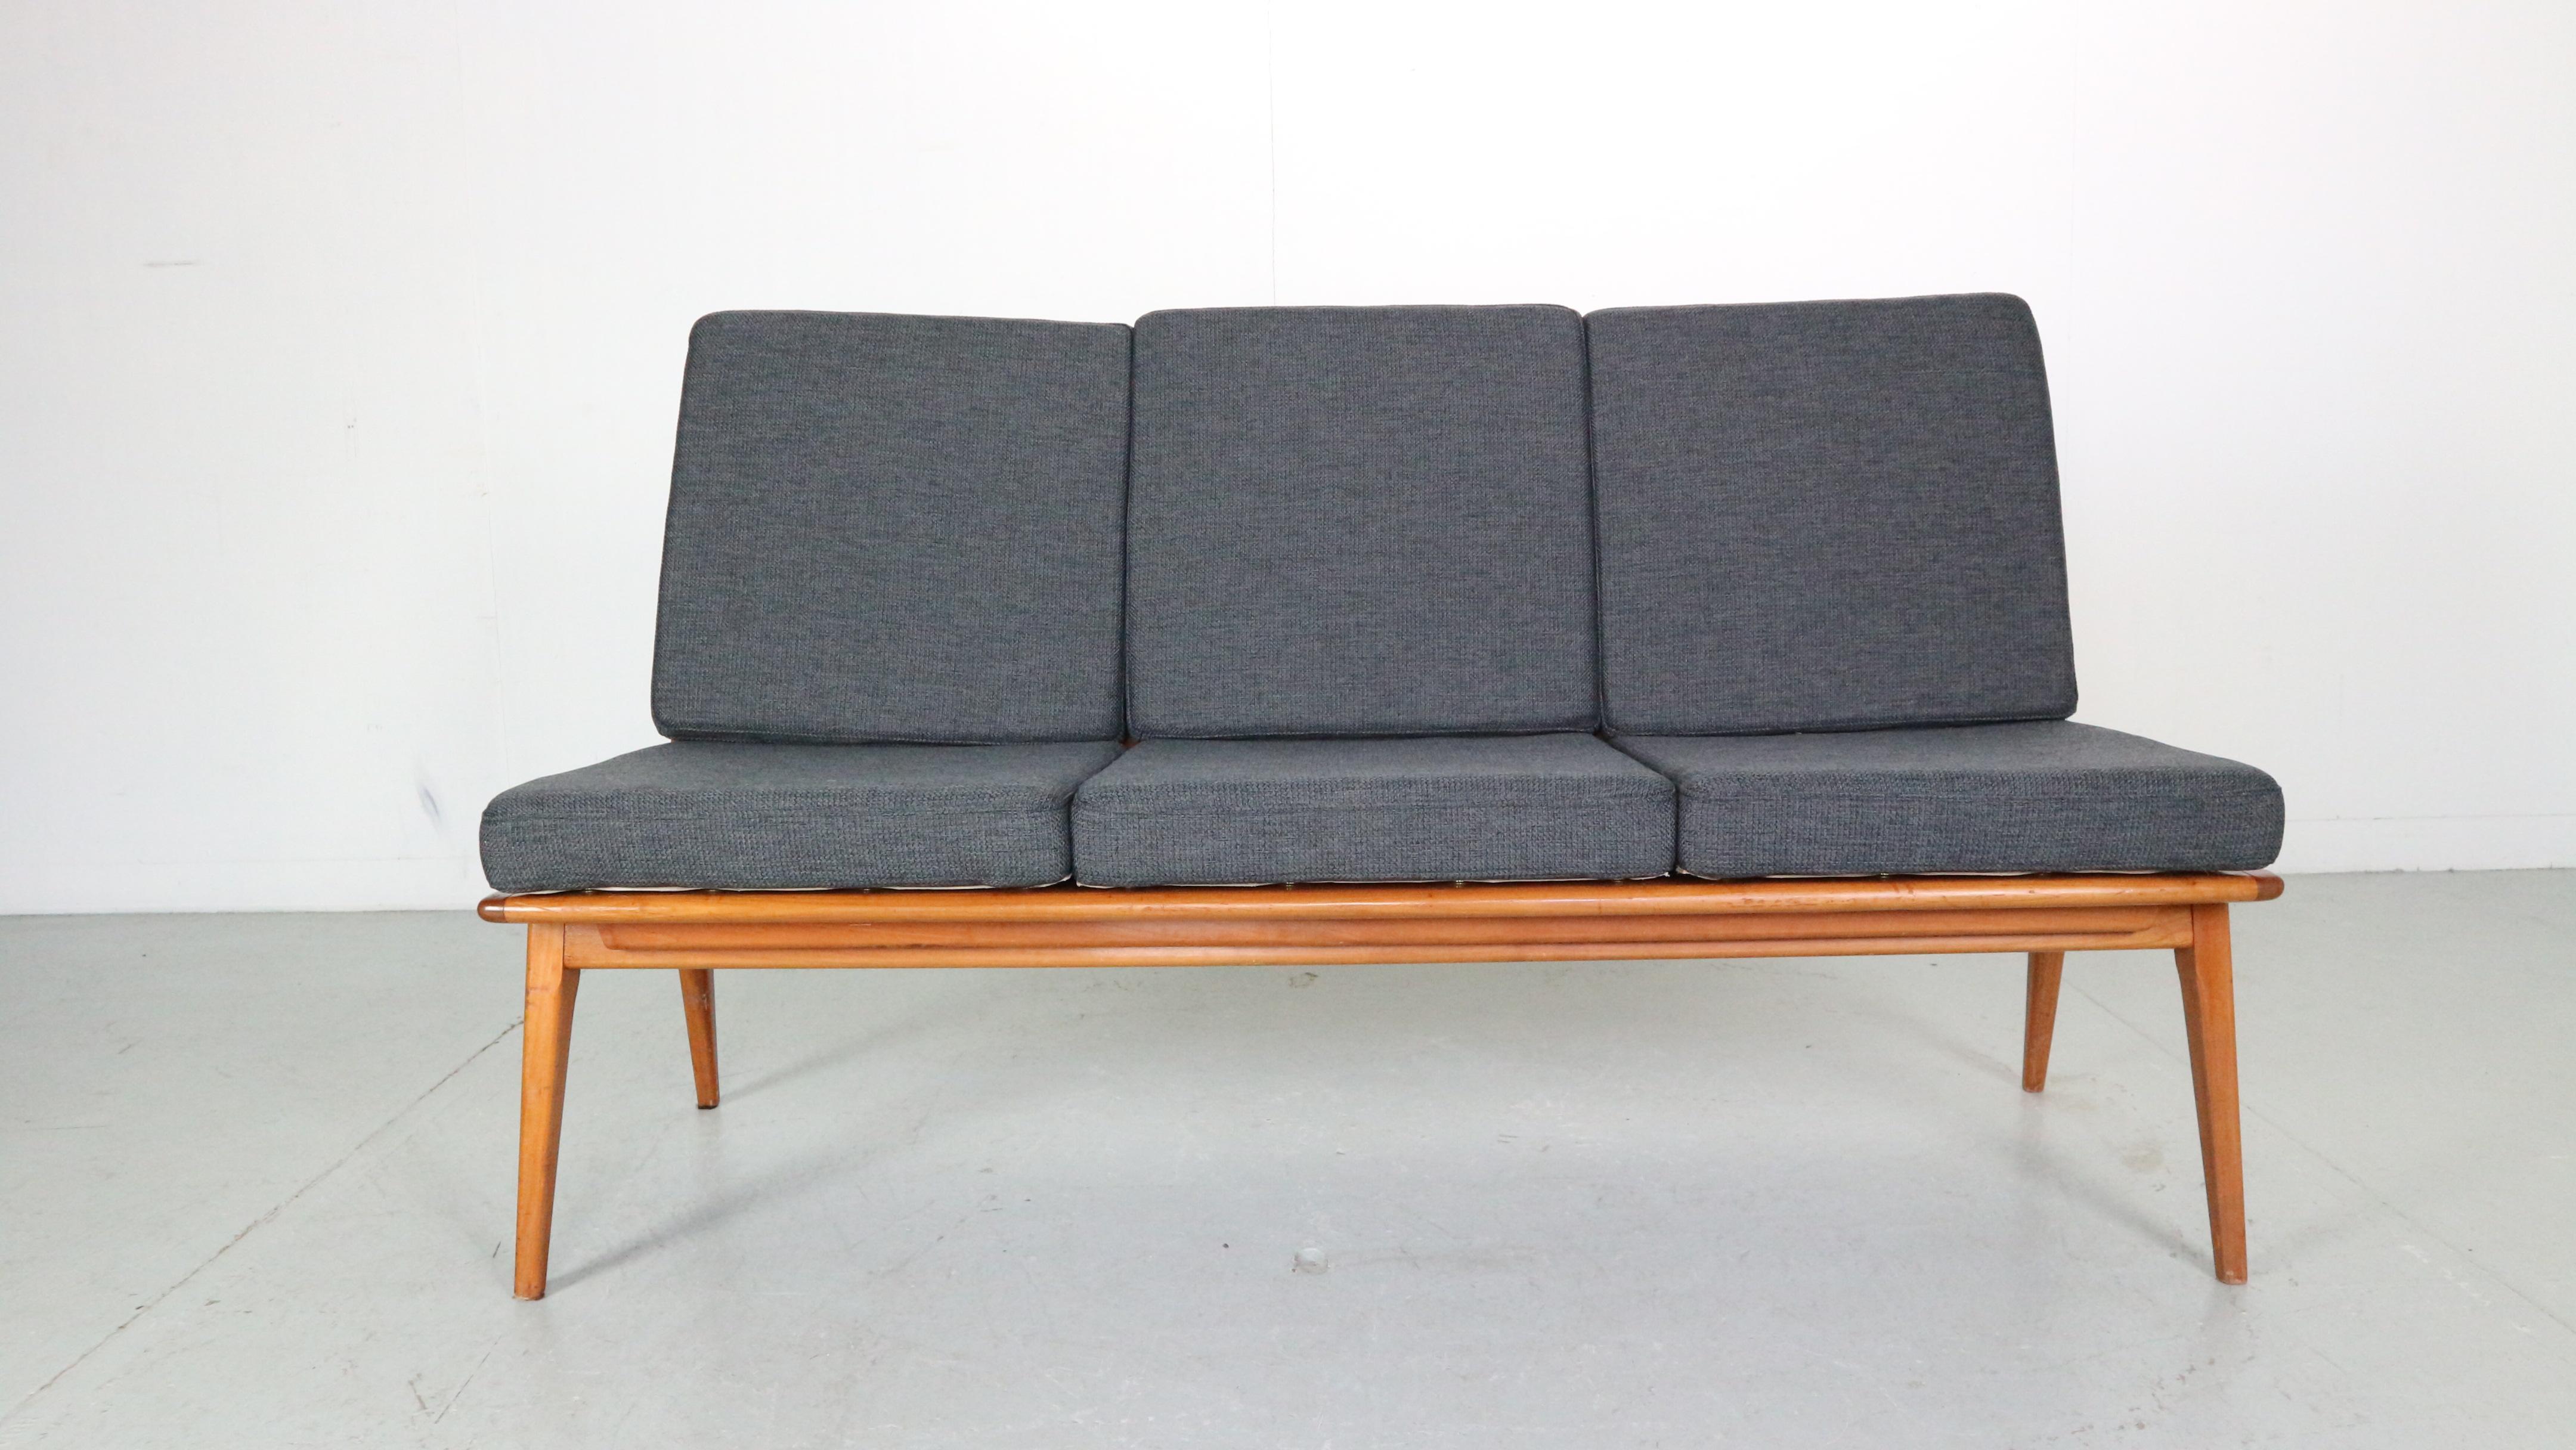 Dreisitziges Sofa im dänischen Stil, entworfen von Hans Mitzlaff für Eugene Scmidt Soloform in den 50er Jahren. Dieses bumerangförmige Modell erinnert an die beliebten Entwürfe von Alfred Christensen.

Das Sofa zeichnet sich durch ein stilvolles